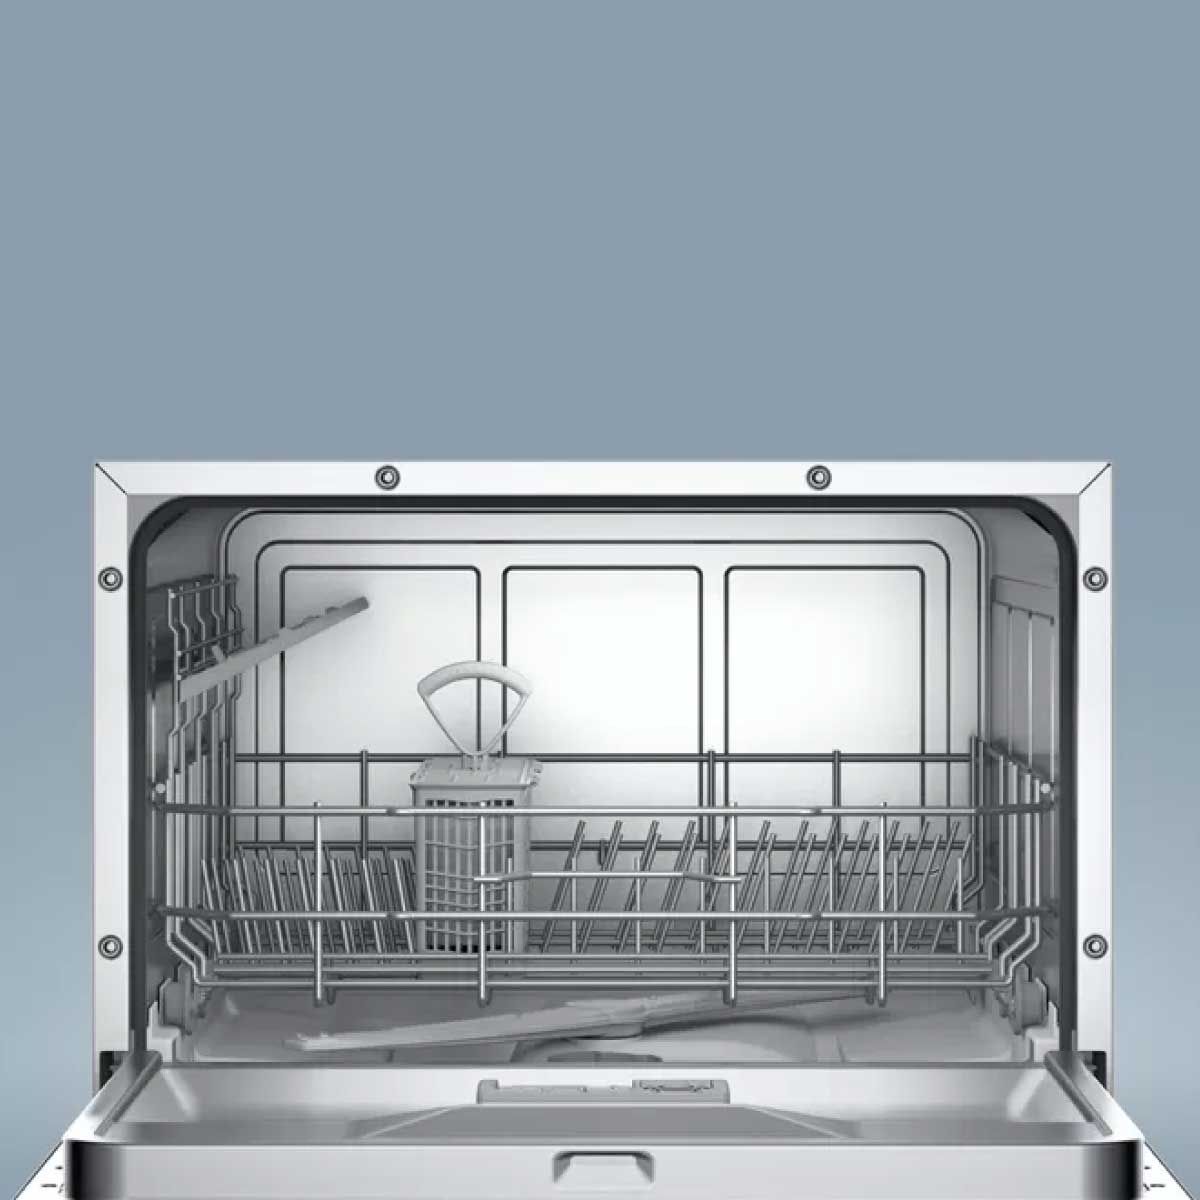 BOSCH เครื่องล้างจานแบบตั้งโต๊ะ 55 cm White  ซีรี่ 2 รุ่น SKS50E42EU